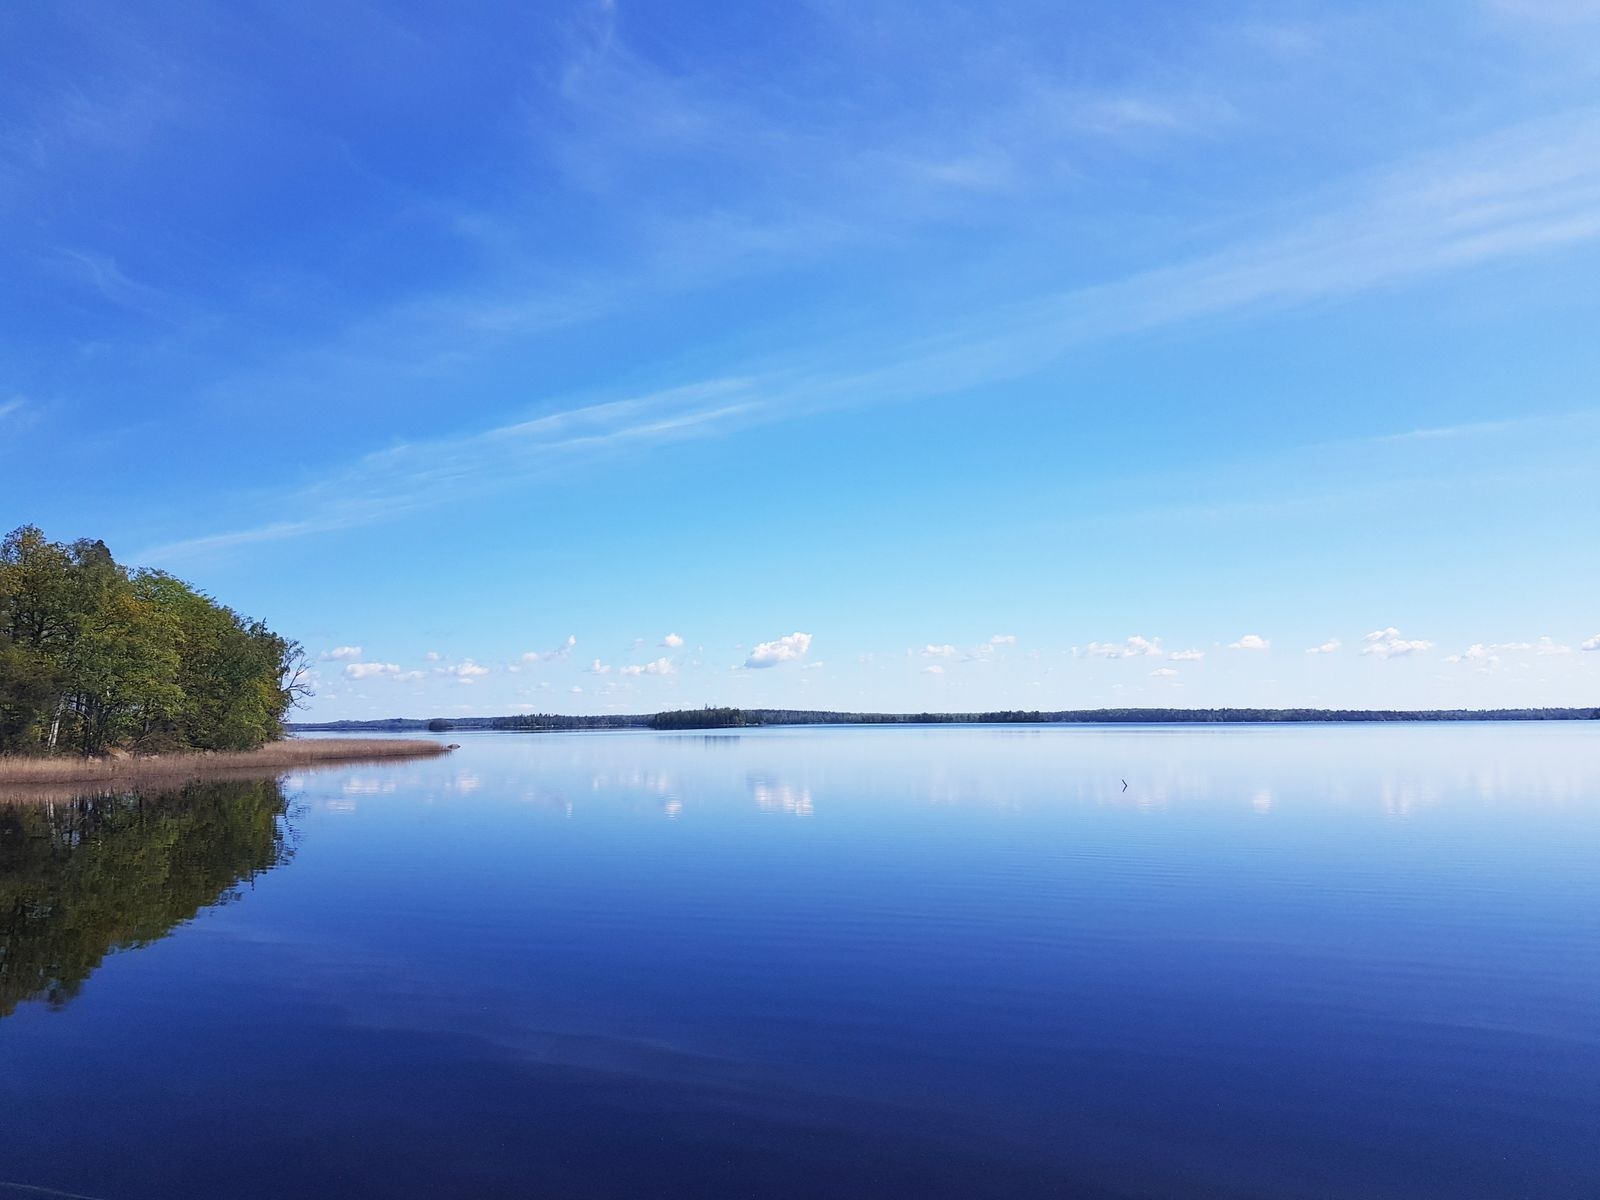 Sjön Åsnen ligger helt vindstilla och spegelblank.